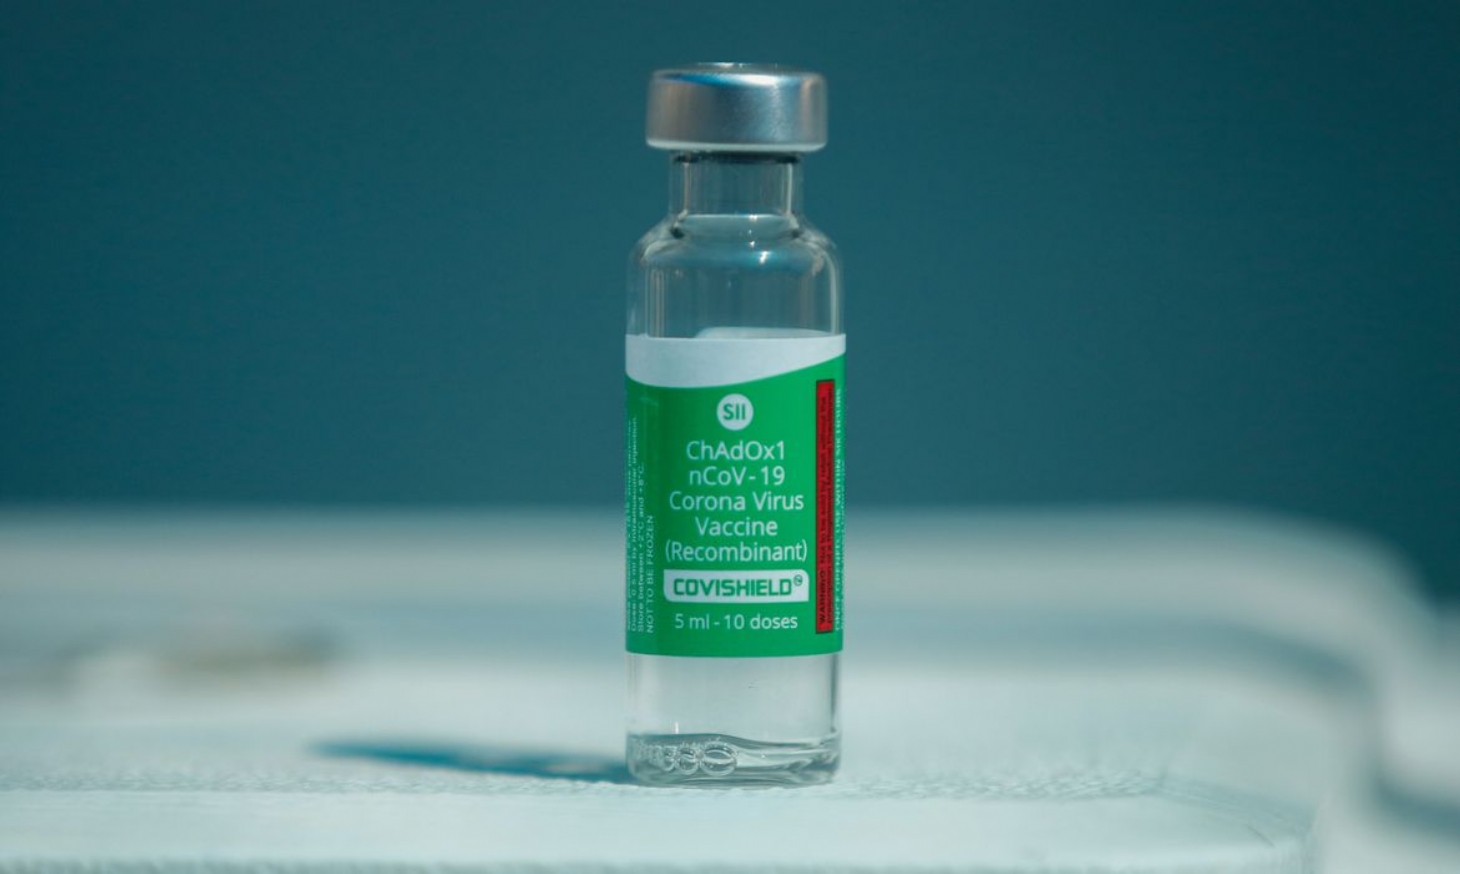 Governo federal diz que não se envolve em compras privadas de vacina | Jornal da Orla